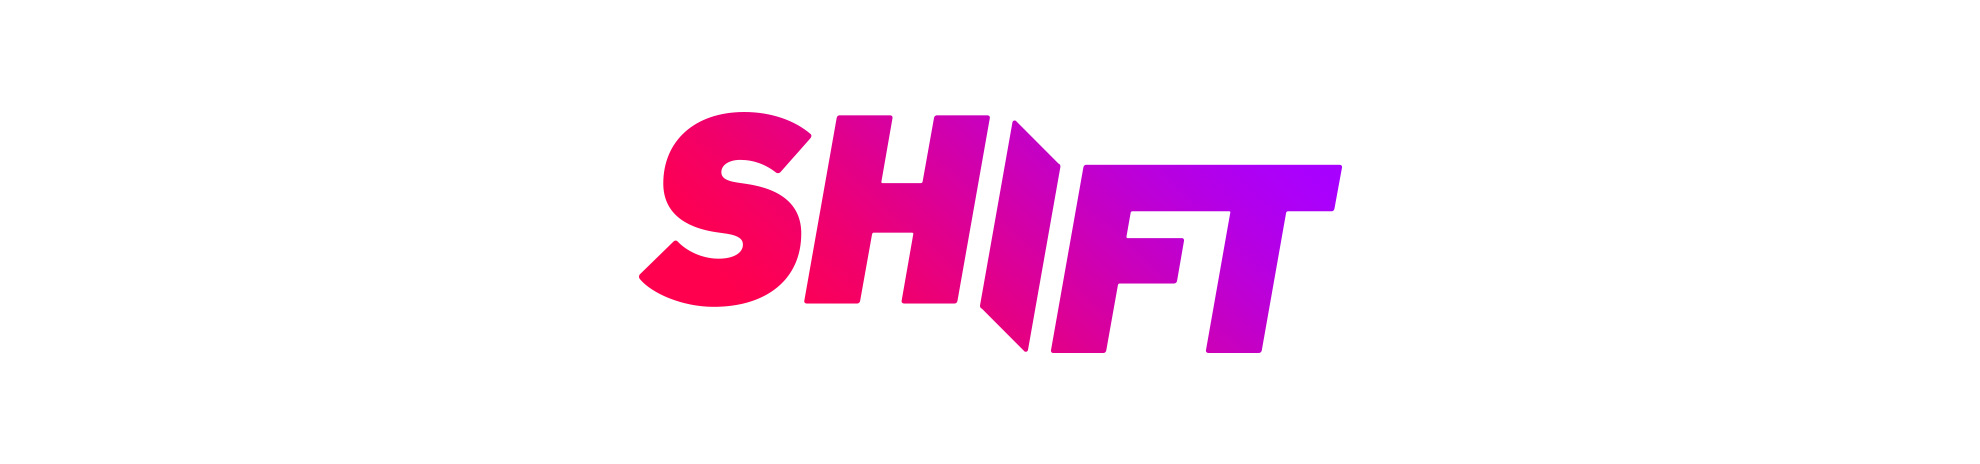 Shift.jpg